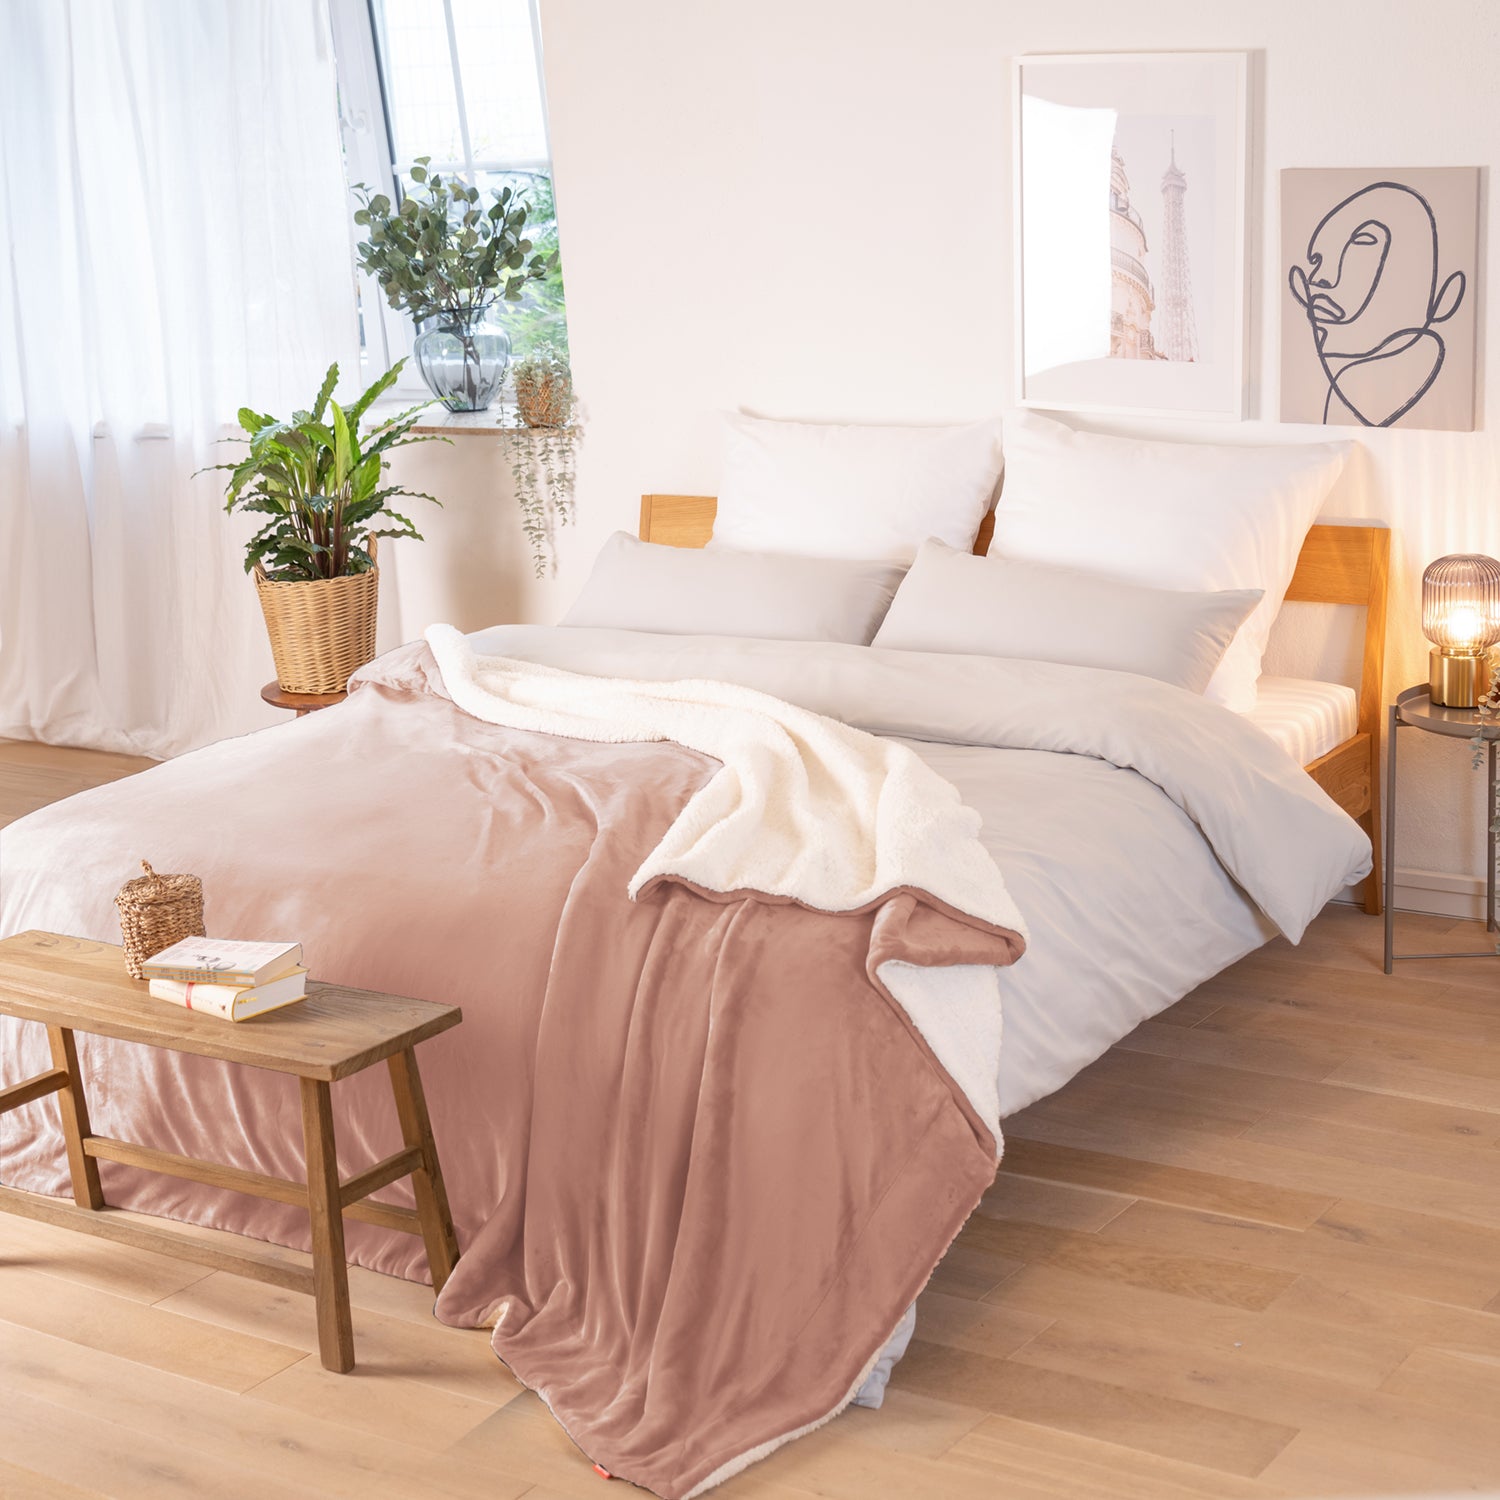 Rosa Decke mit weißer Fleece-Innenseite, ausgebreitet über ein Bett in einem Raum mit natürlicher Beleuchtung, Pflanzen und Bildern im Hintergrund.